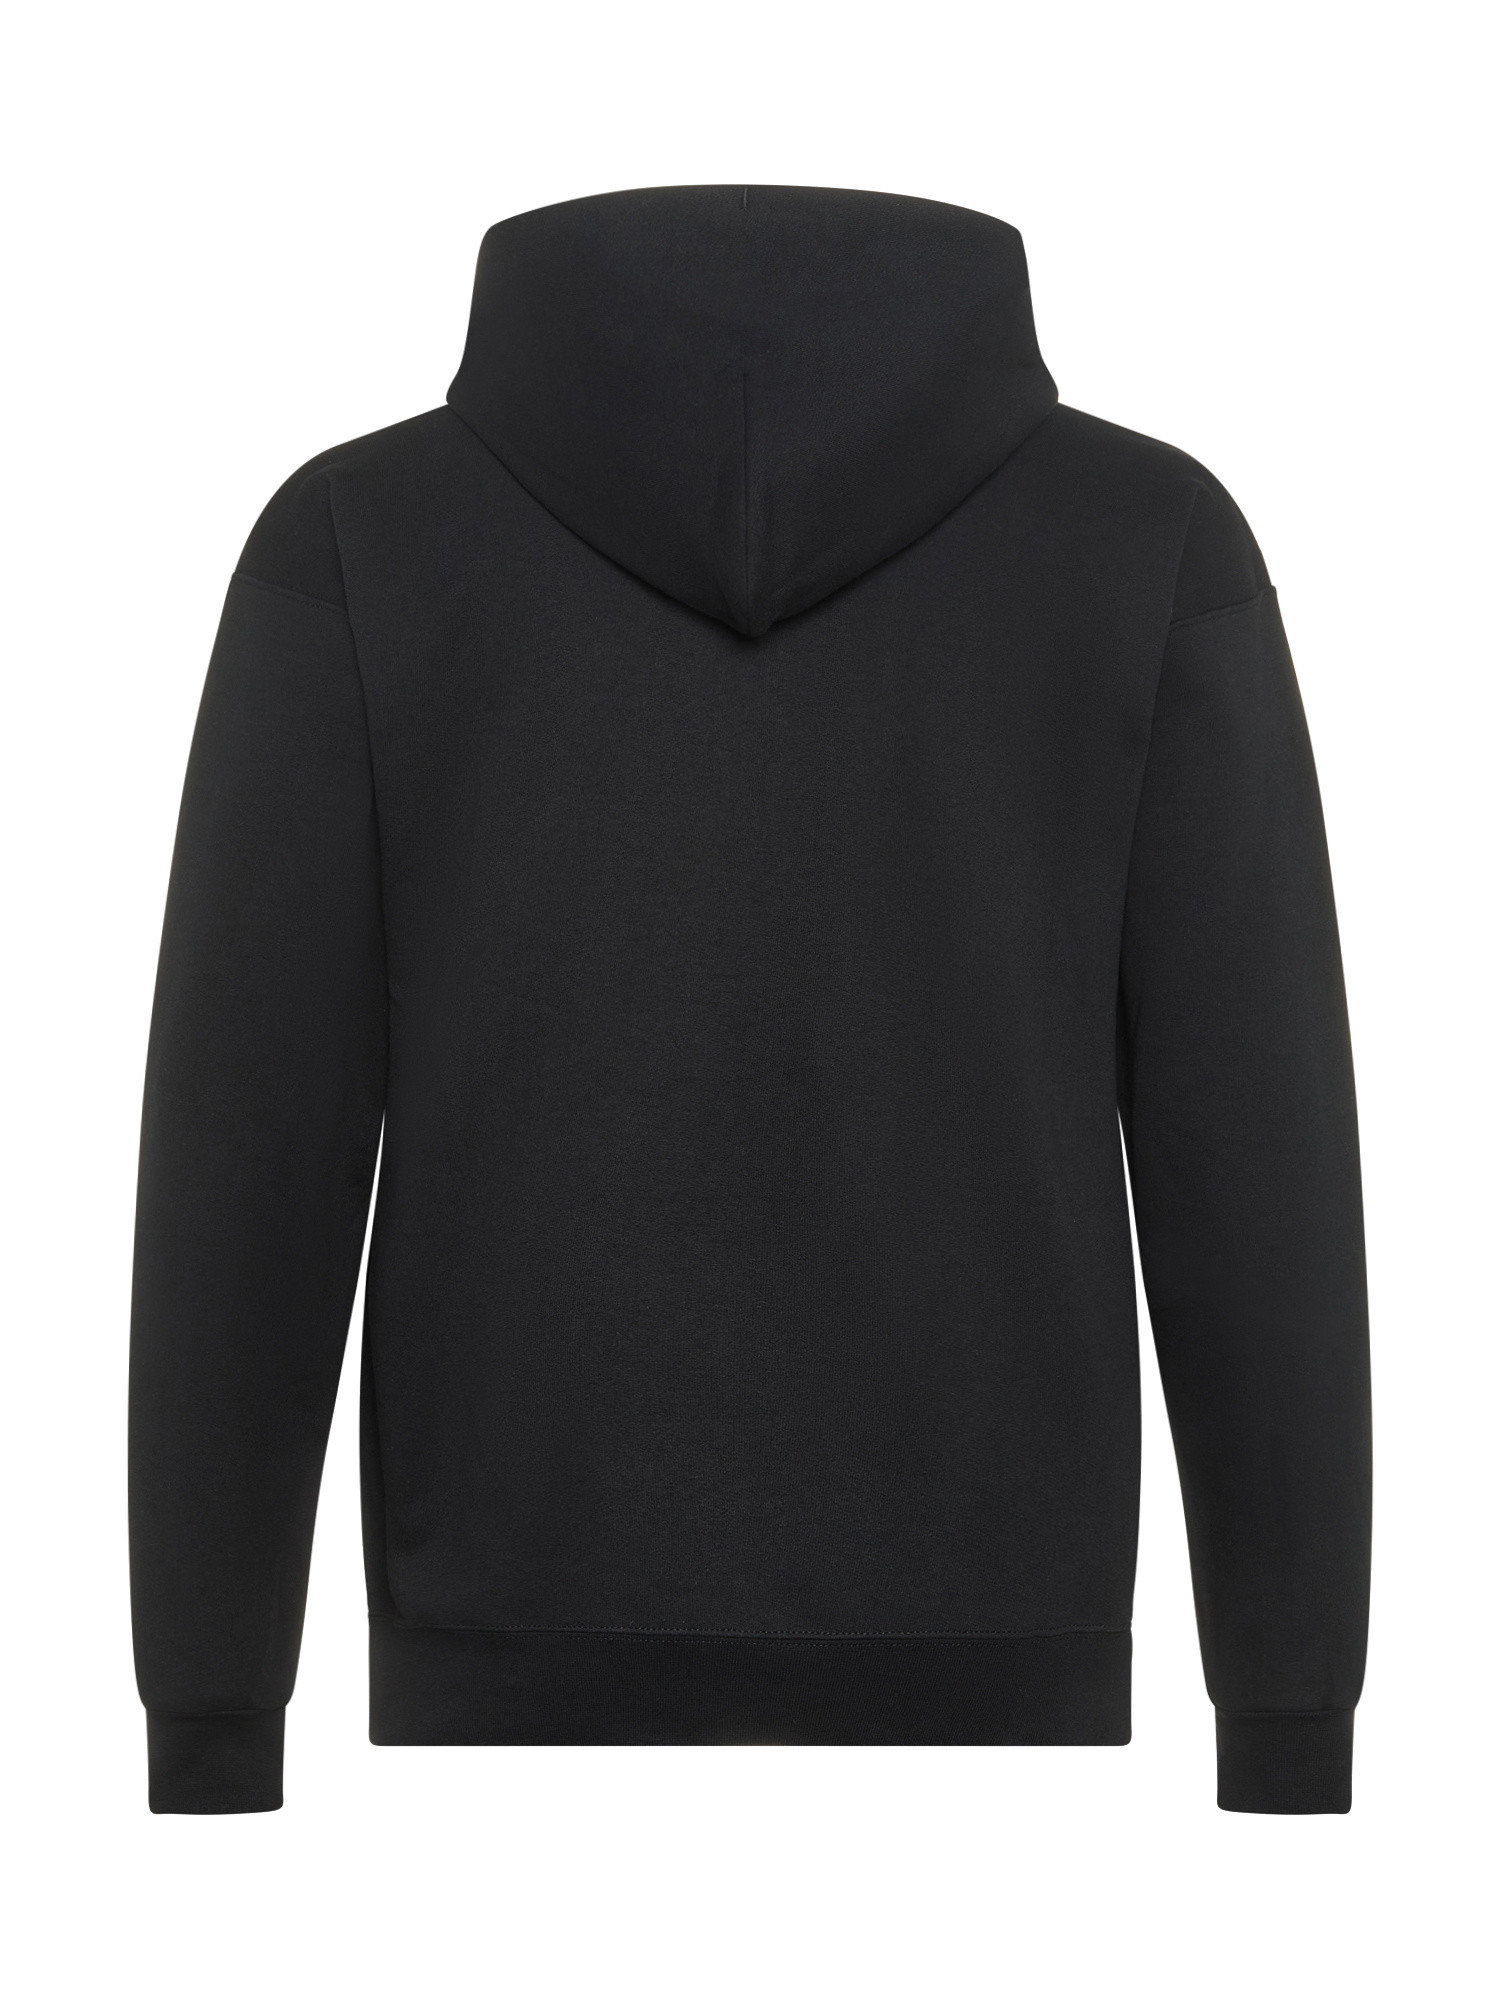 Thrasher - Outlined logo hoodie, Black, large image number 1